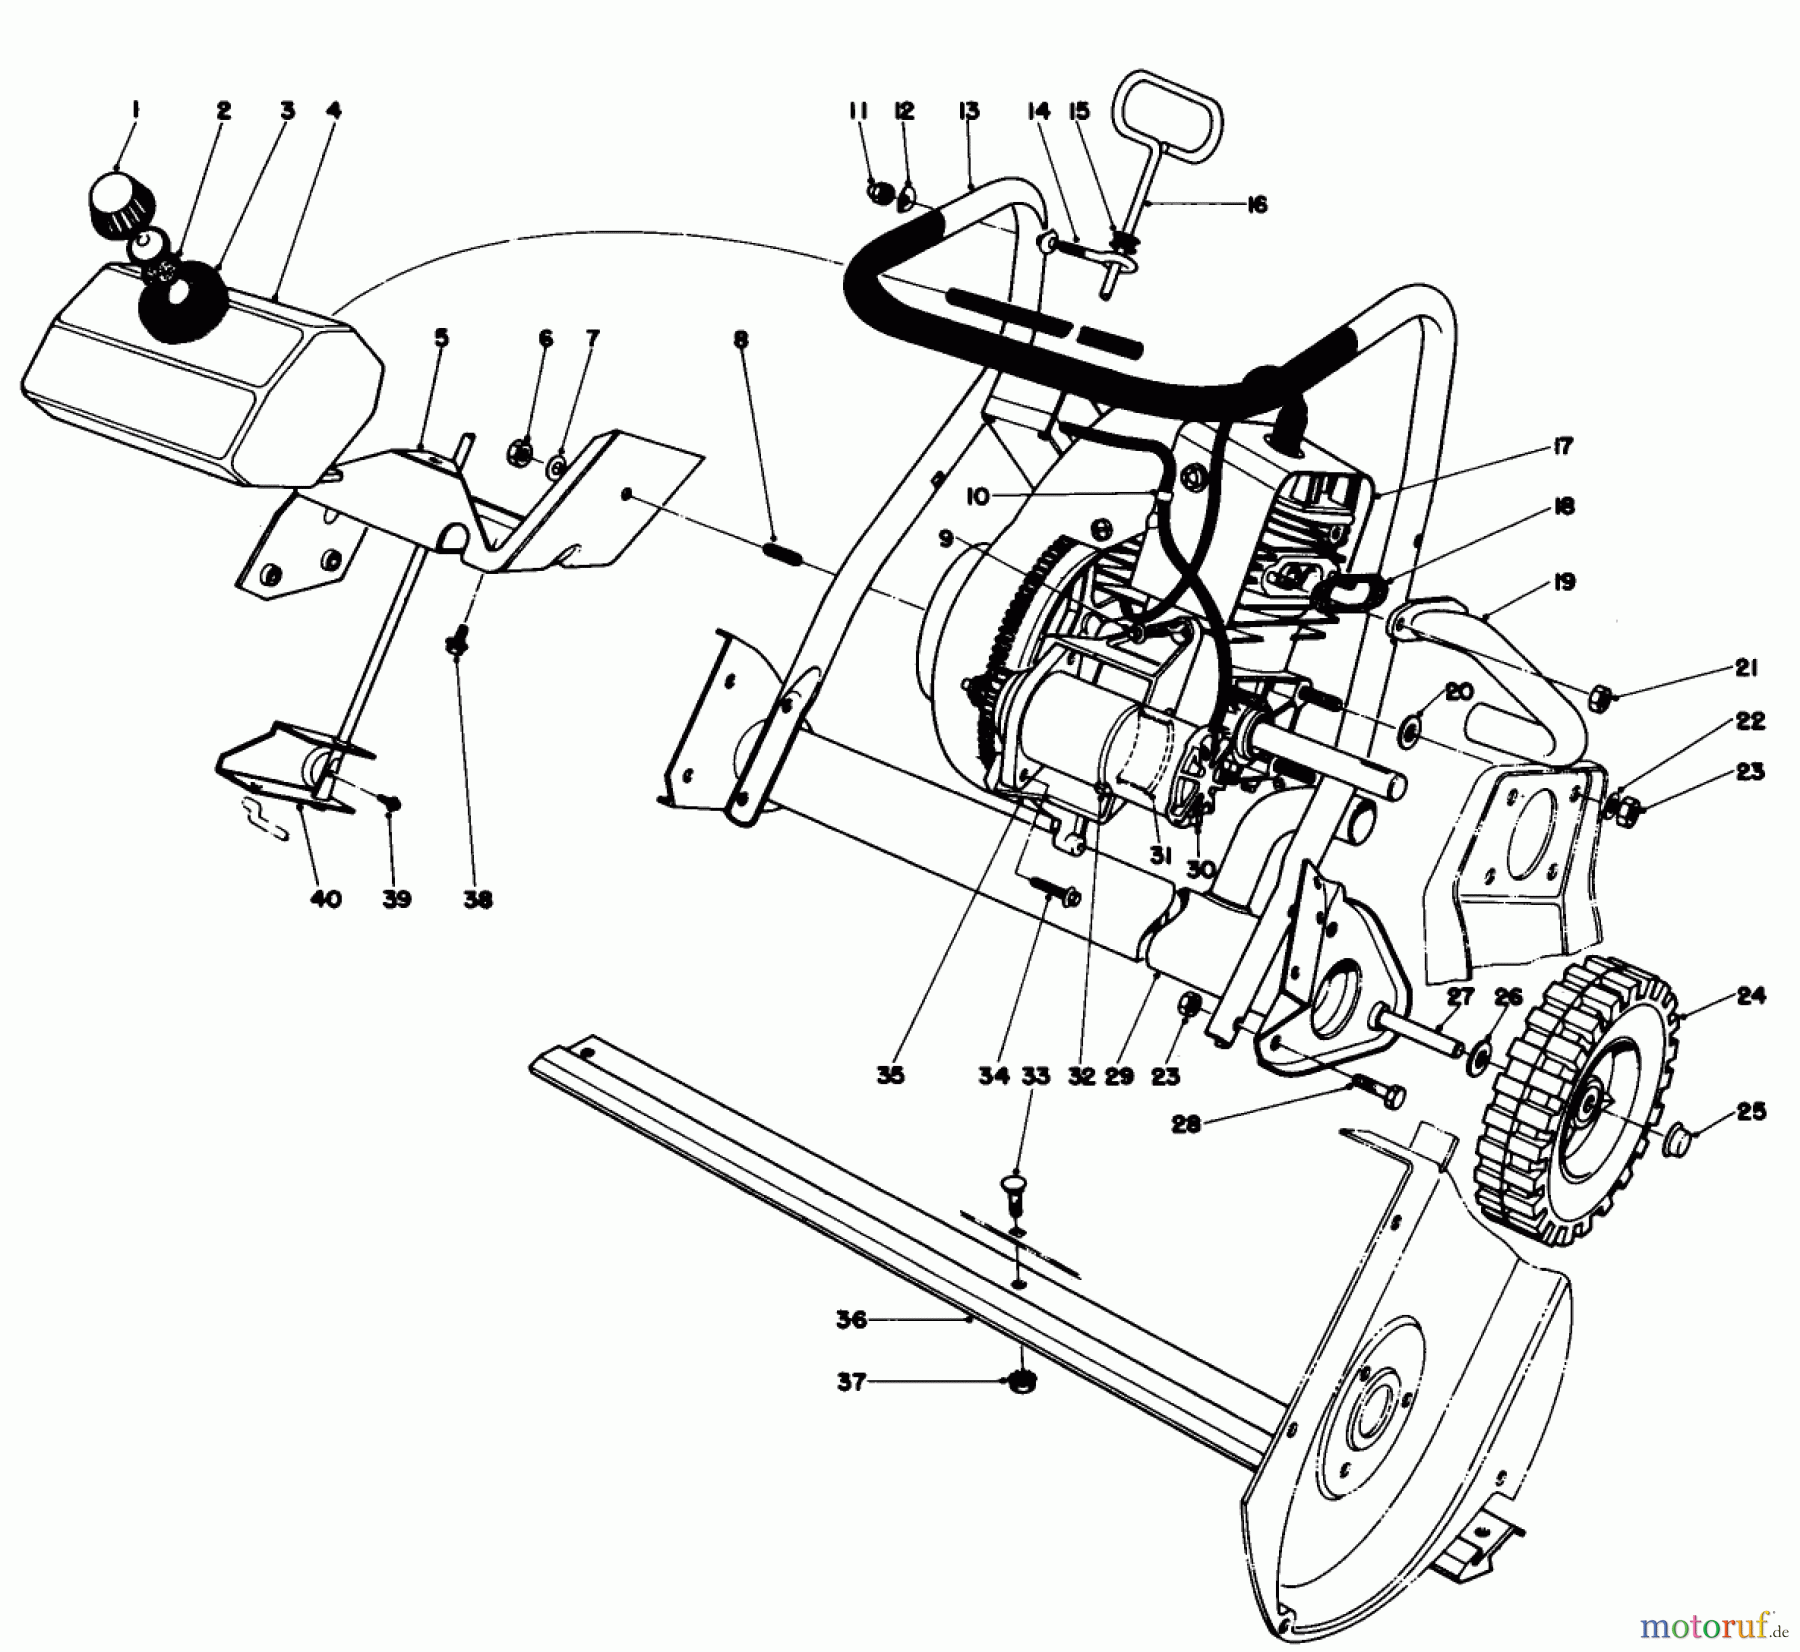  Toro Neu Snow Blowers/Snow Throwers Seite 1 38020 - Toro Snow Master 20, 1978 (8000001-8999999) ENGINE ASSEMBLY (MODEL 38030)